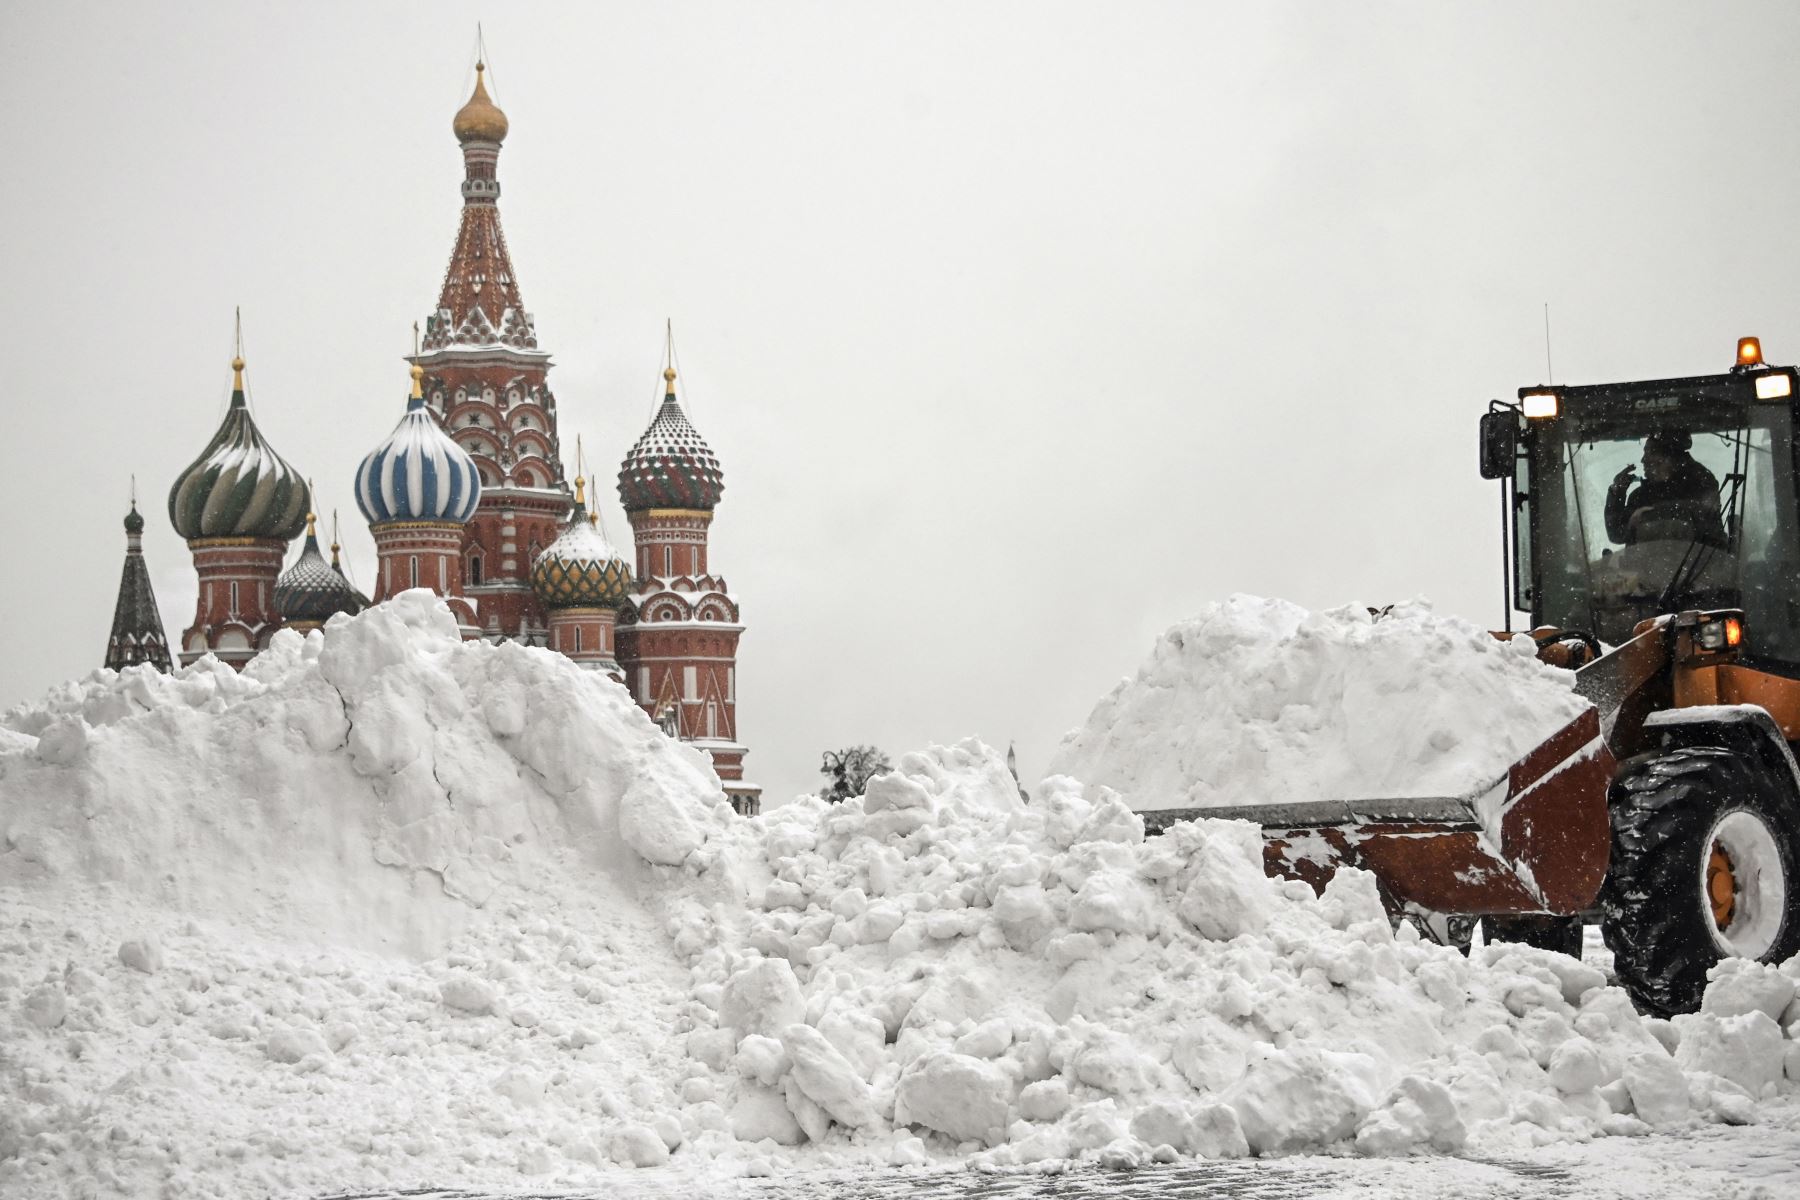 Los trabajadores municipales limpian la nieve en la Plaza Roja durante una fuerte nevada en Moscú . Casi el 20% de la nevada mensual cayó en Moscú durante la noche, informan los medios locales.
Foto: AFP